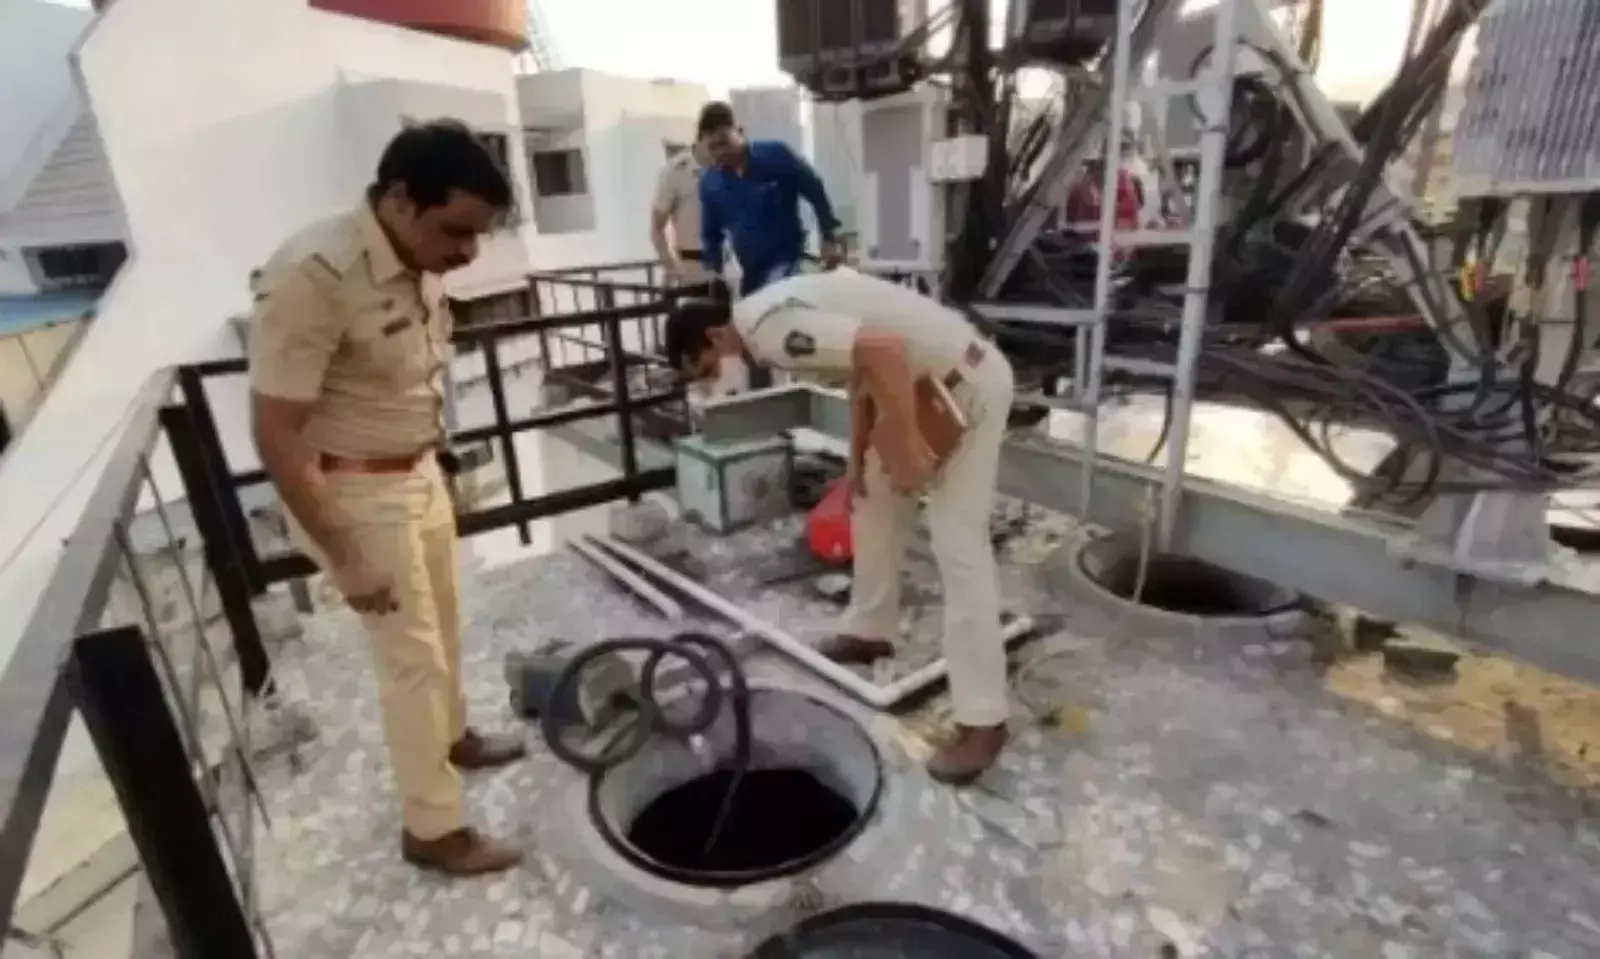 Kaithal : ऑयल मिल के टैंक की सफाई करने उतरे दो युवकों की दम घुटने से दर्दनाक मौत